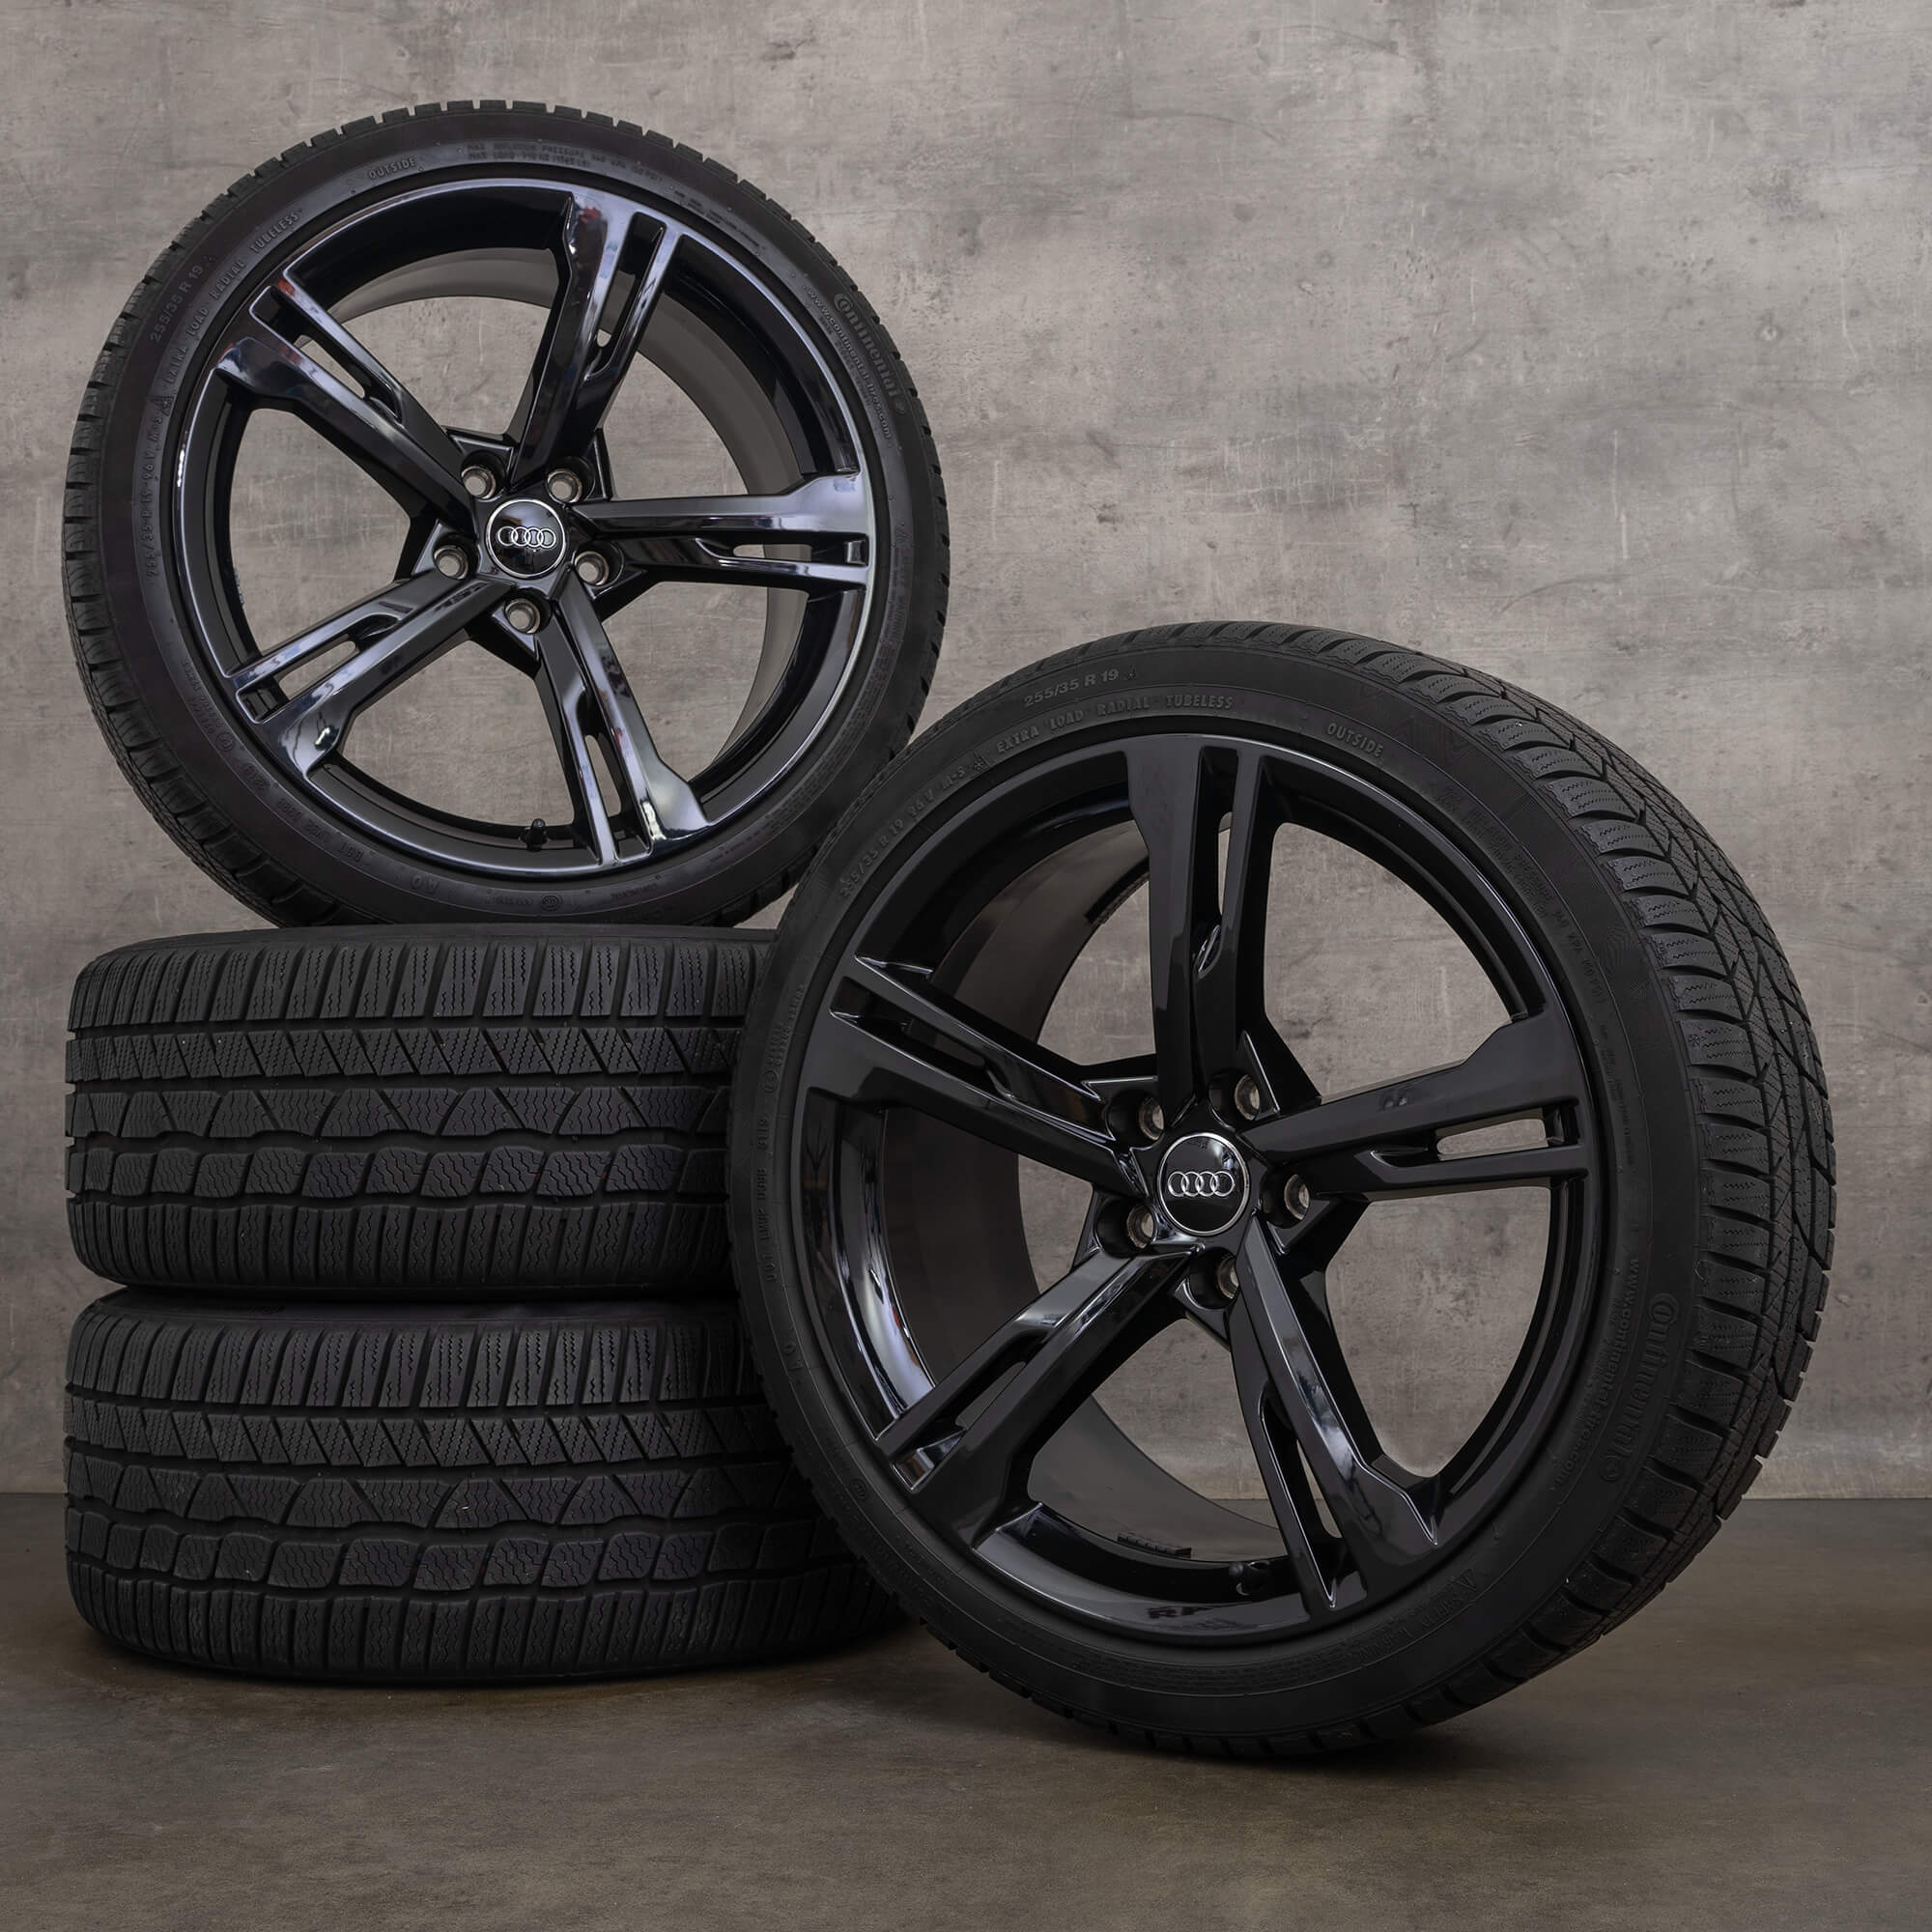 OEM Audi A5 S5 F5 19 inch rims winter tires 8W0071499B Ramus black wheels